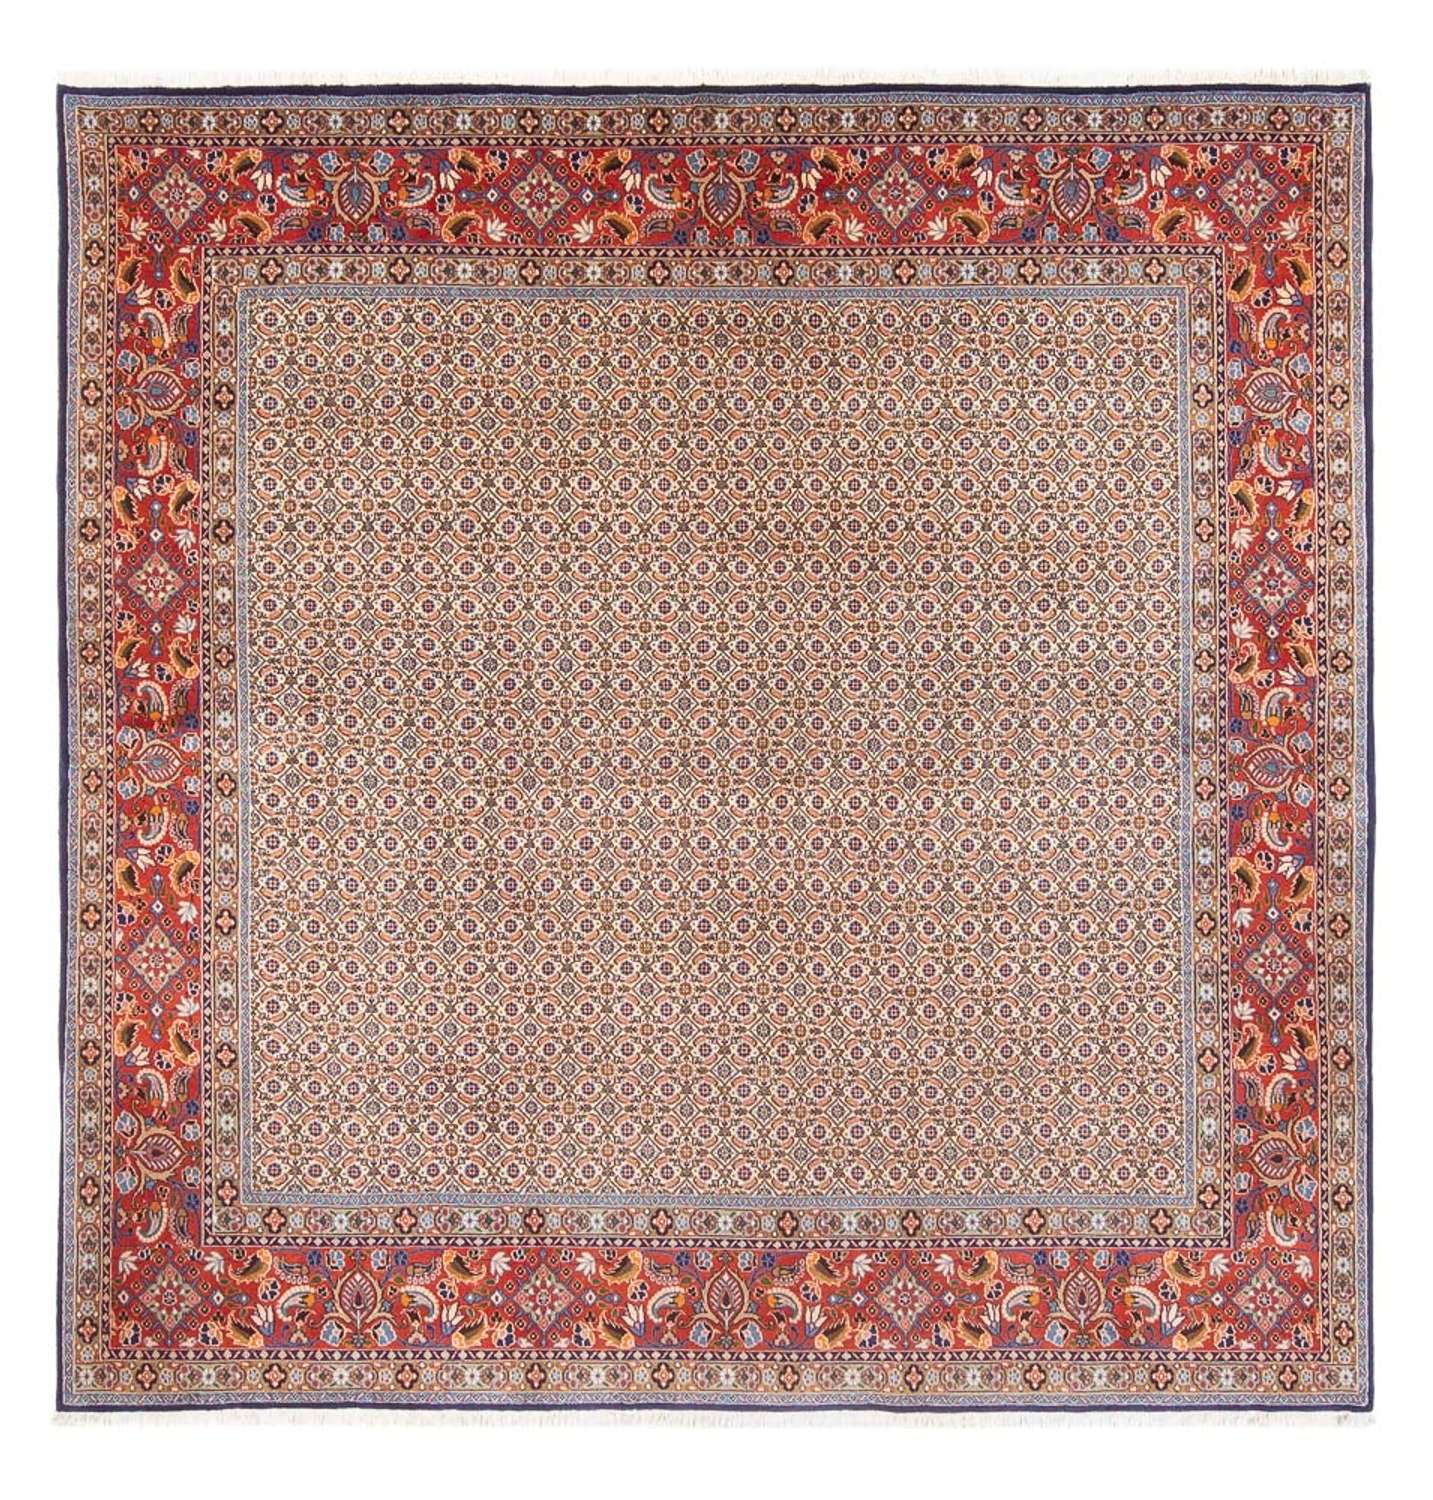 Tapis persan - Classique carré  - 242 x 247 cm - beige foncé